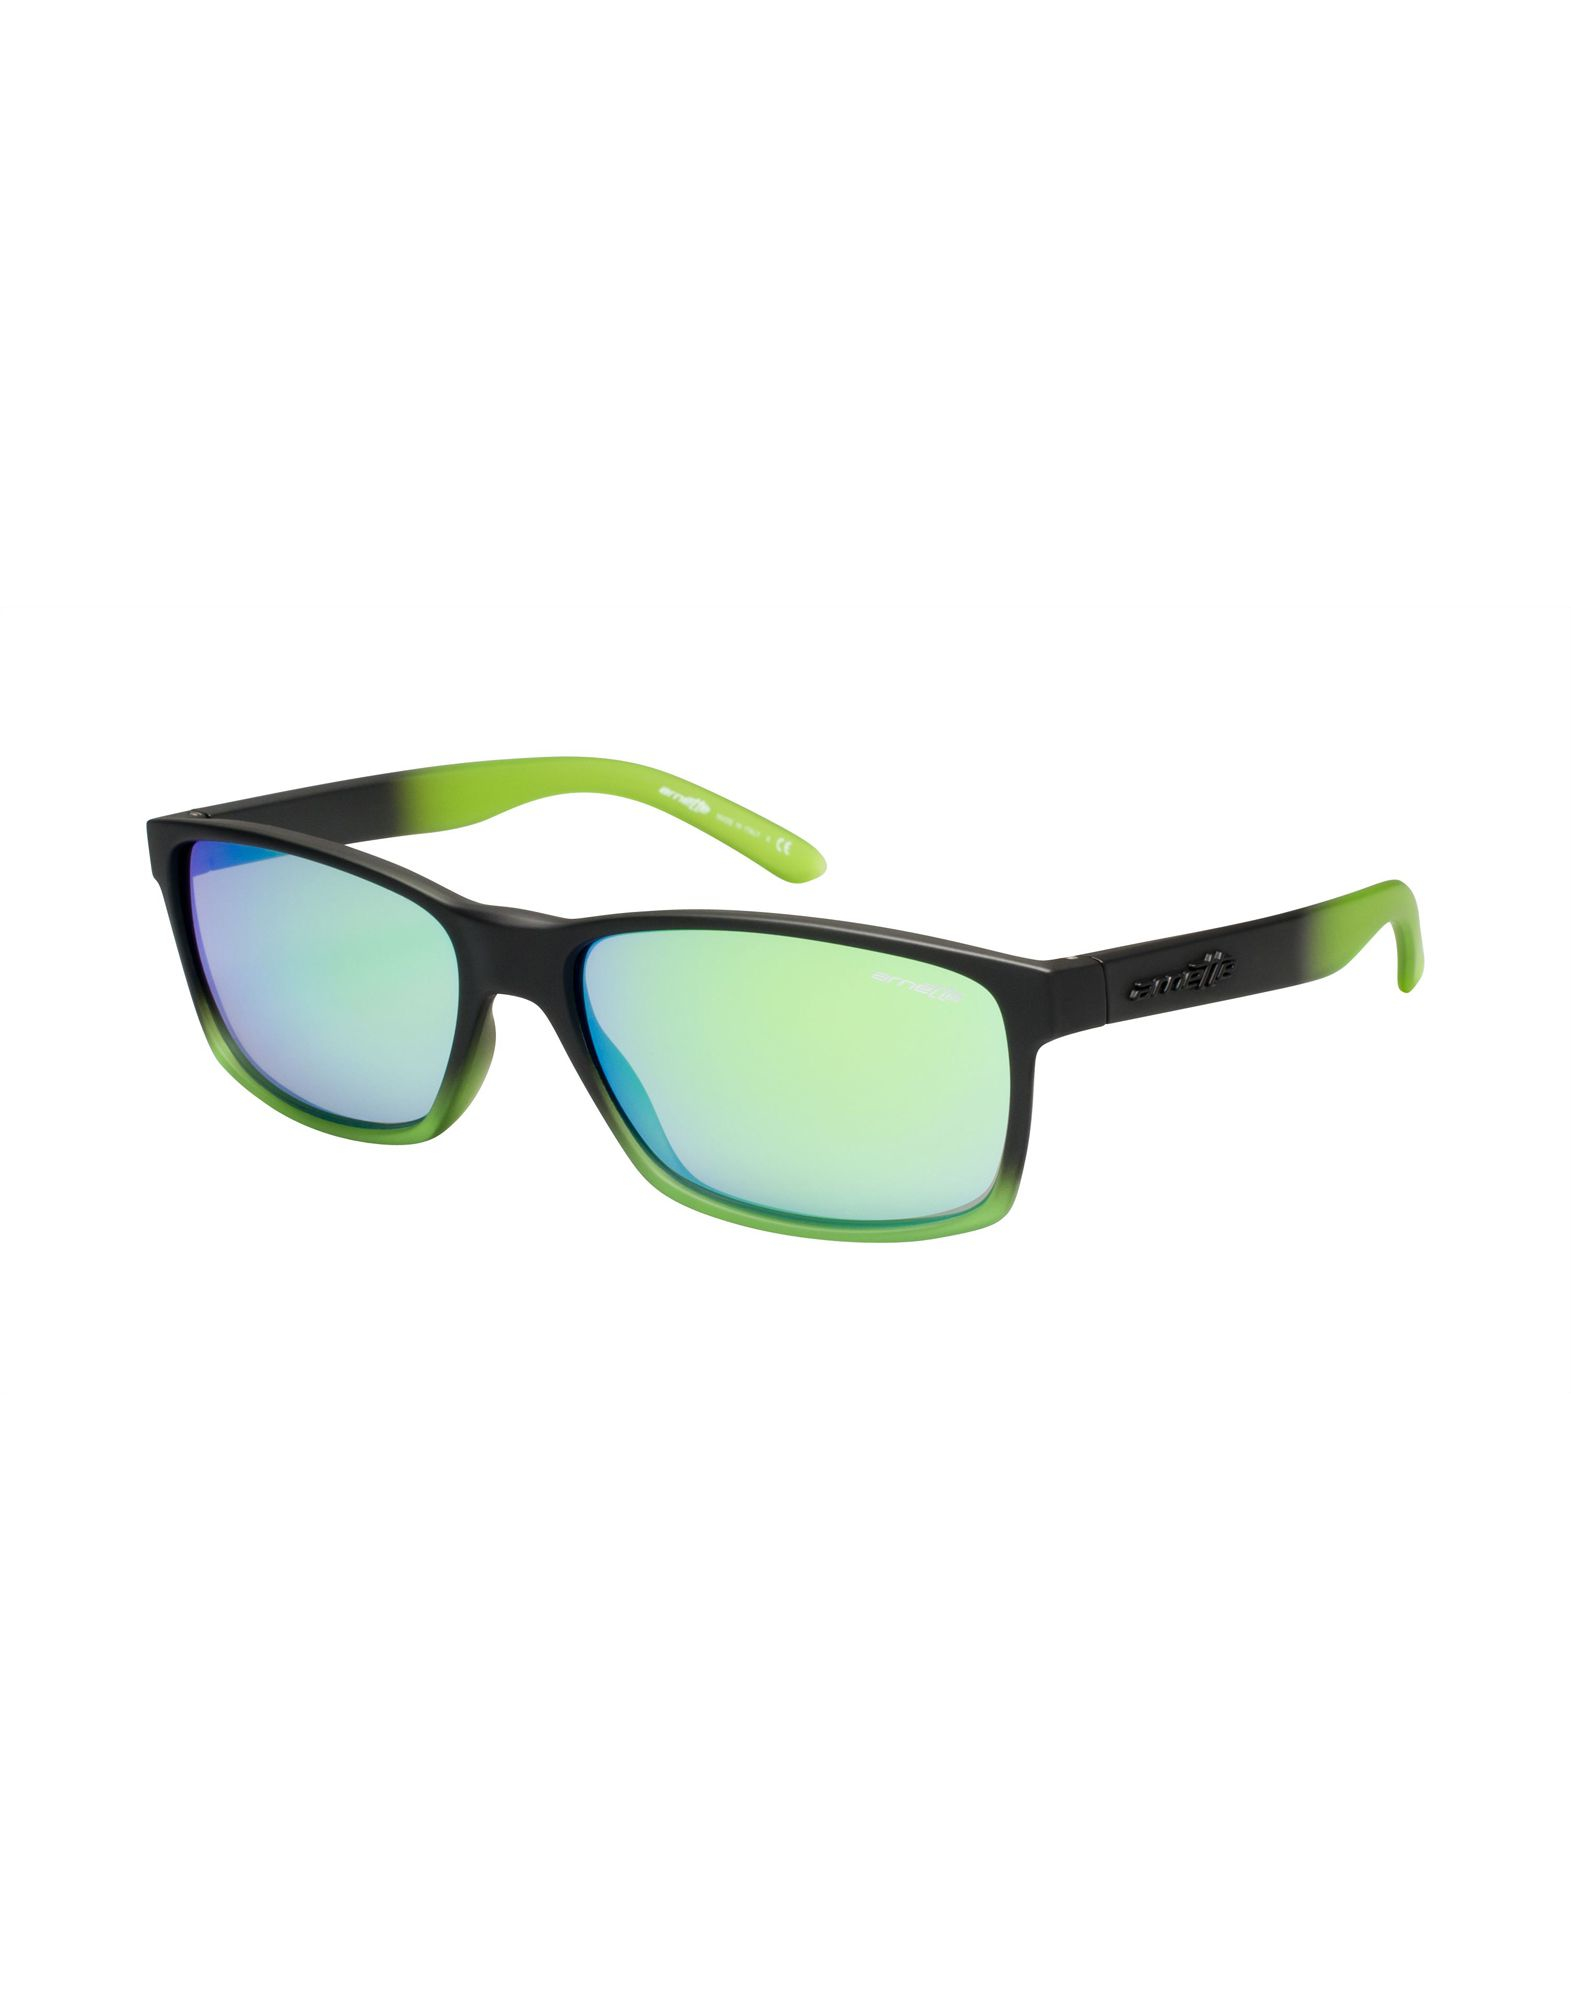 Lyst - Arnette Sunglasses in Green for Men